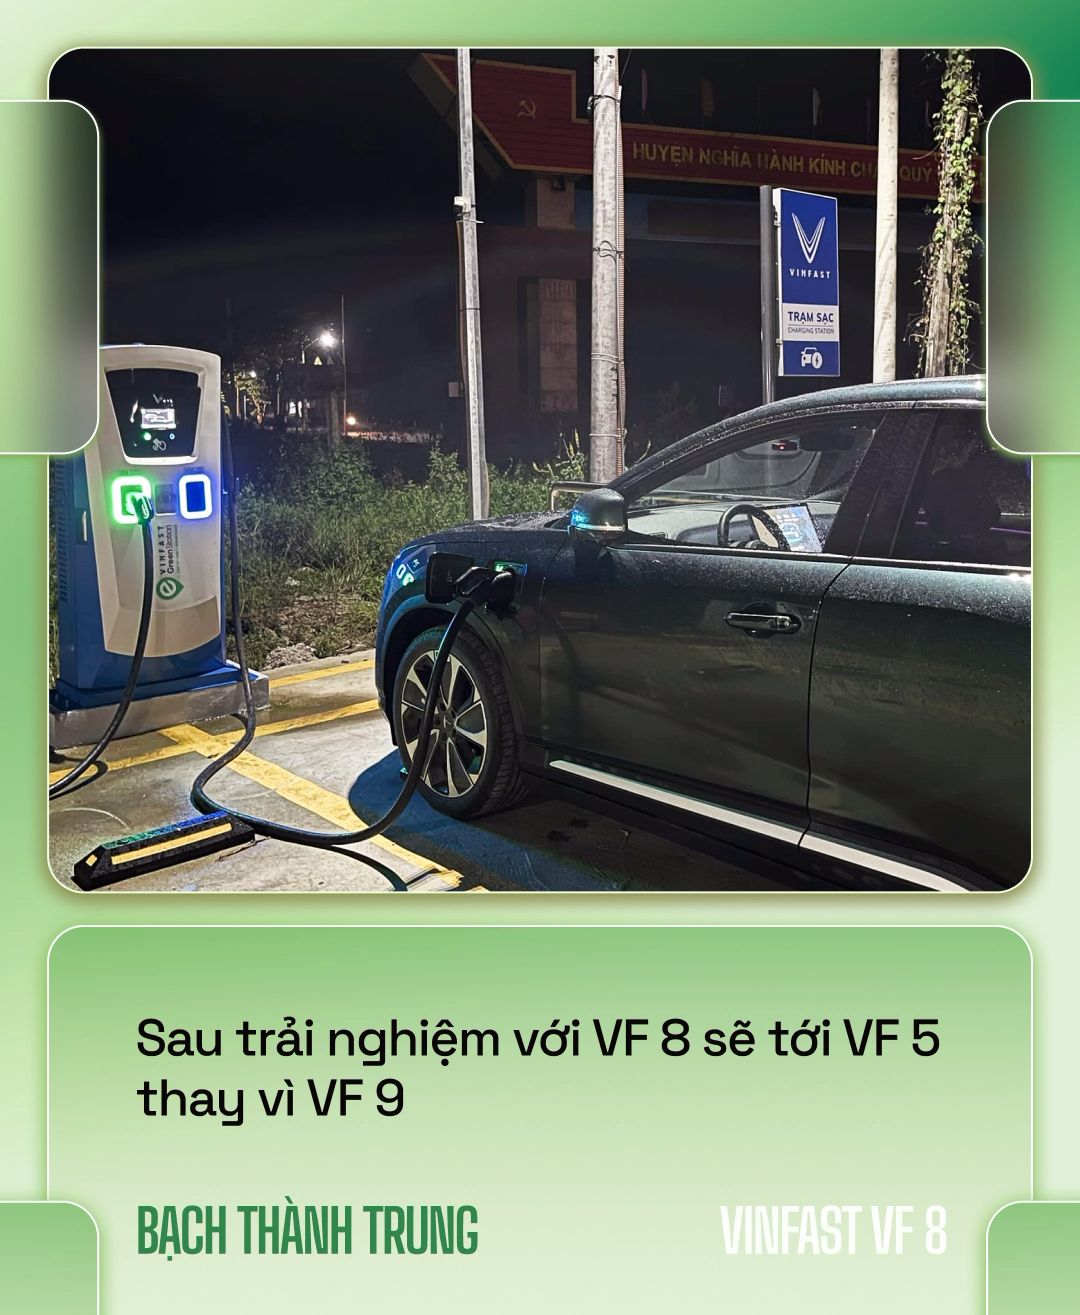 Nhà sáng lập VOZ lái VinFast VF 8 xuyên Việt hơn 6.600km: ‘Đổ đèo nhàn hơn xe xăng, nhưng vẫn cần hoàn thiện hơn’ - Ảnh 6.